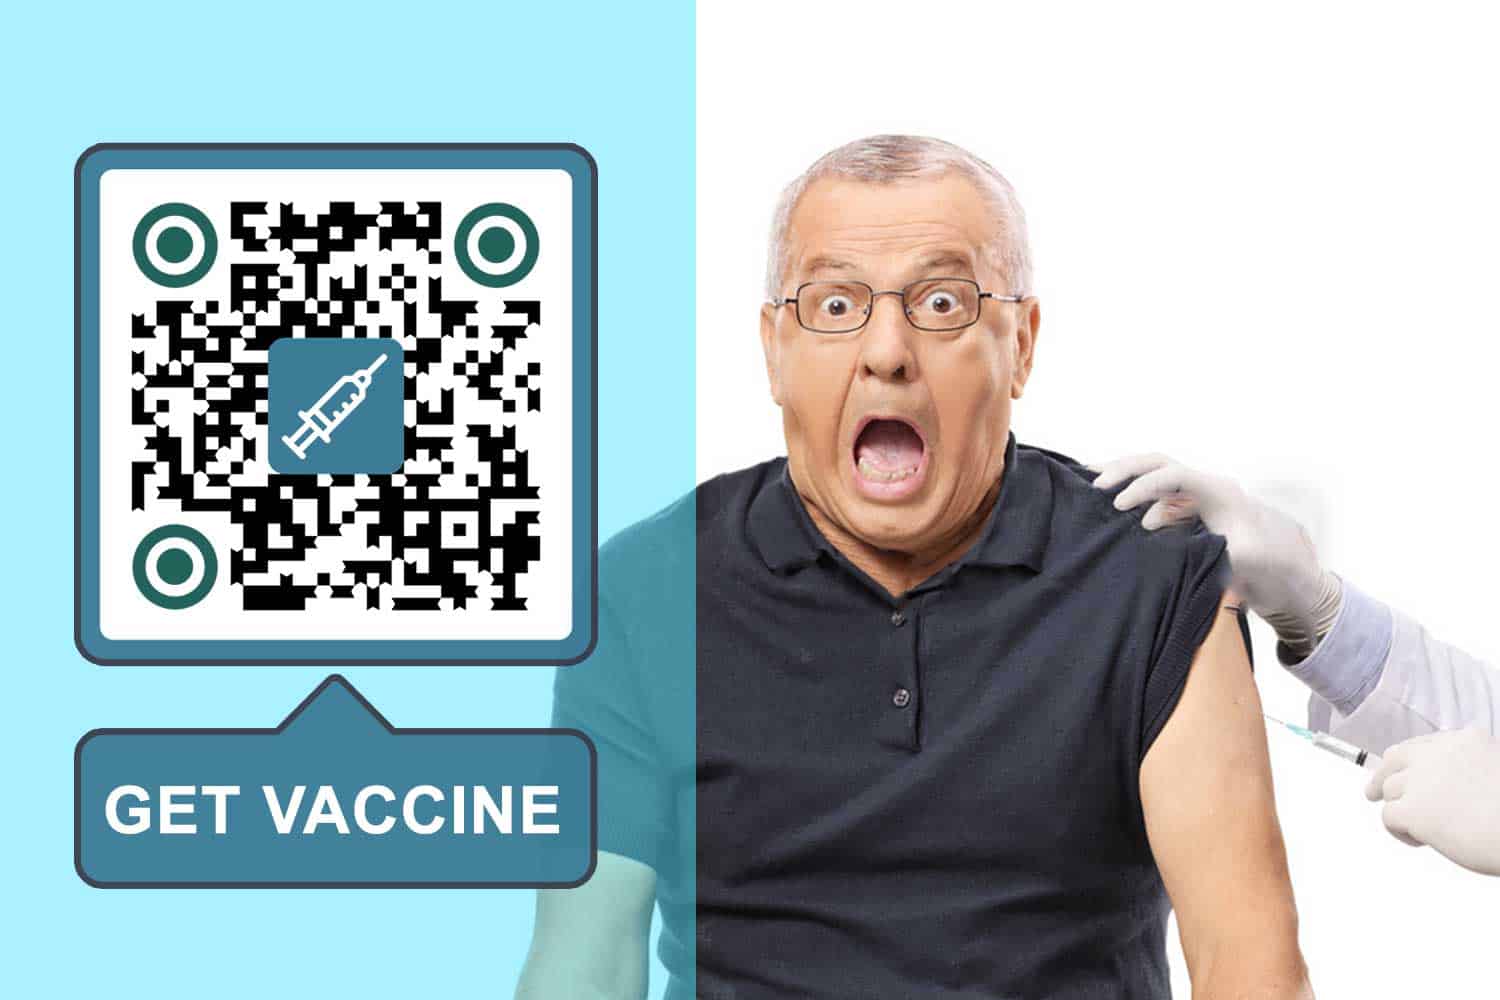 Ustvarite QR kodo za cepivo